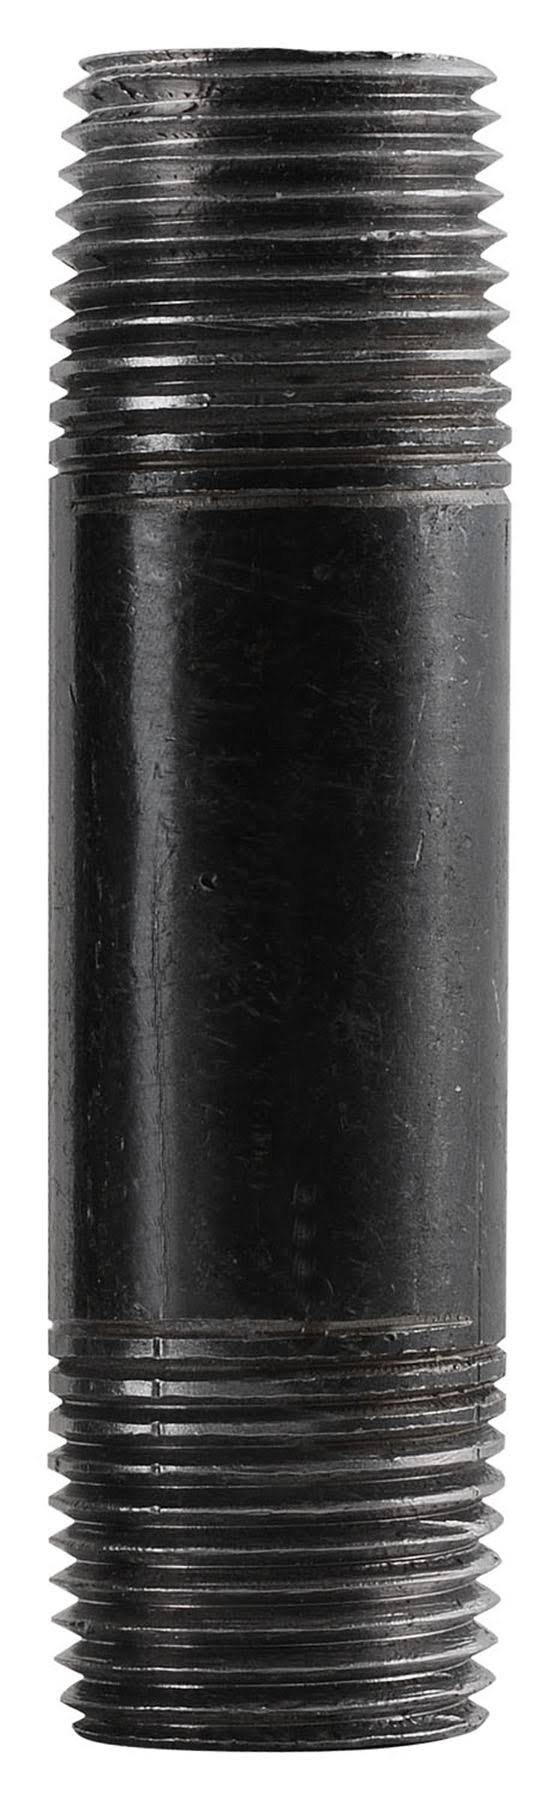 LDR Nipple - Black, 1 1/2" x 2 1/2"